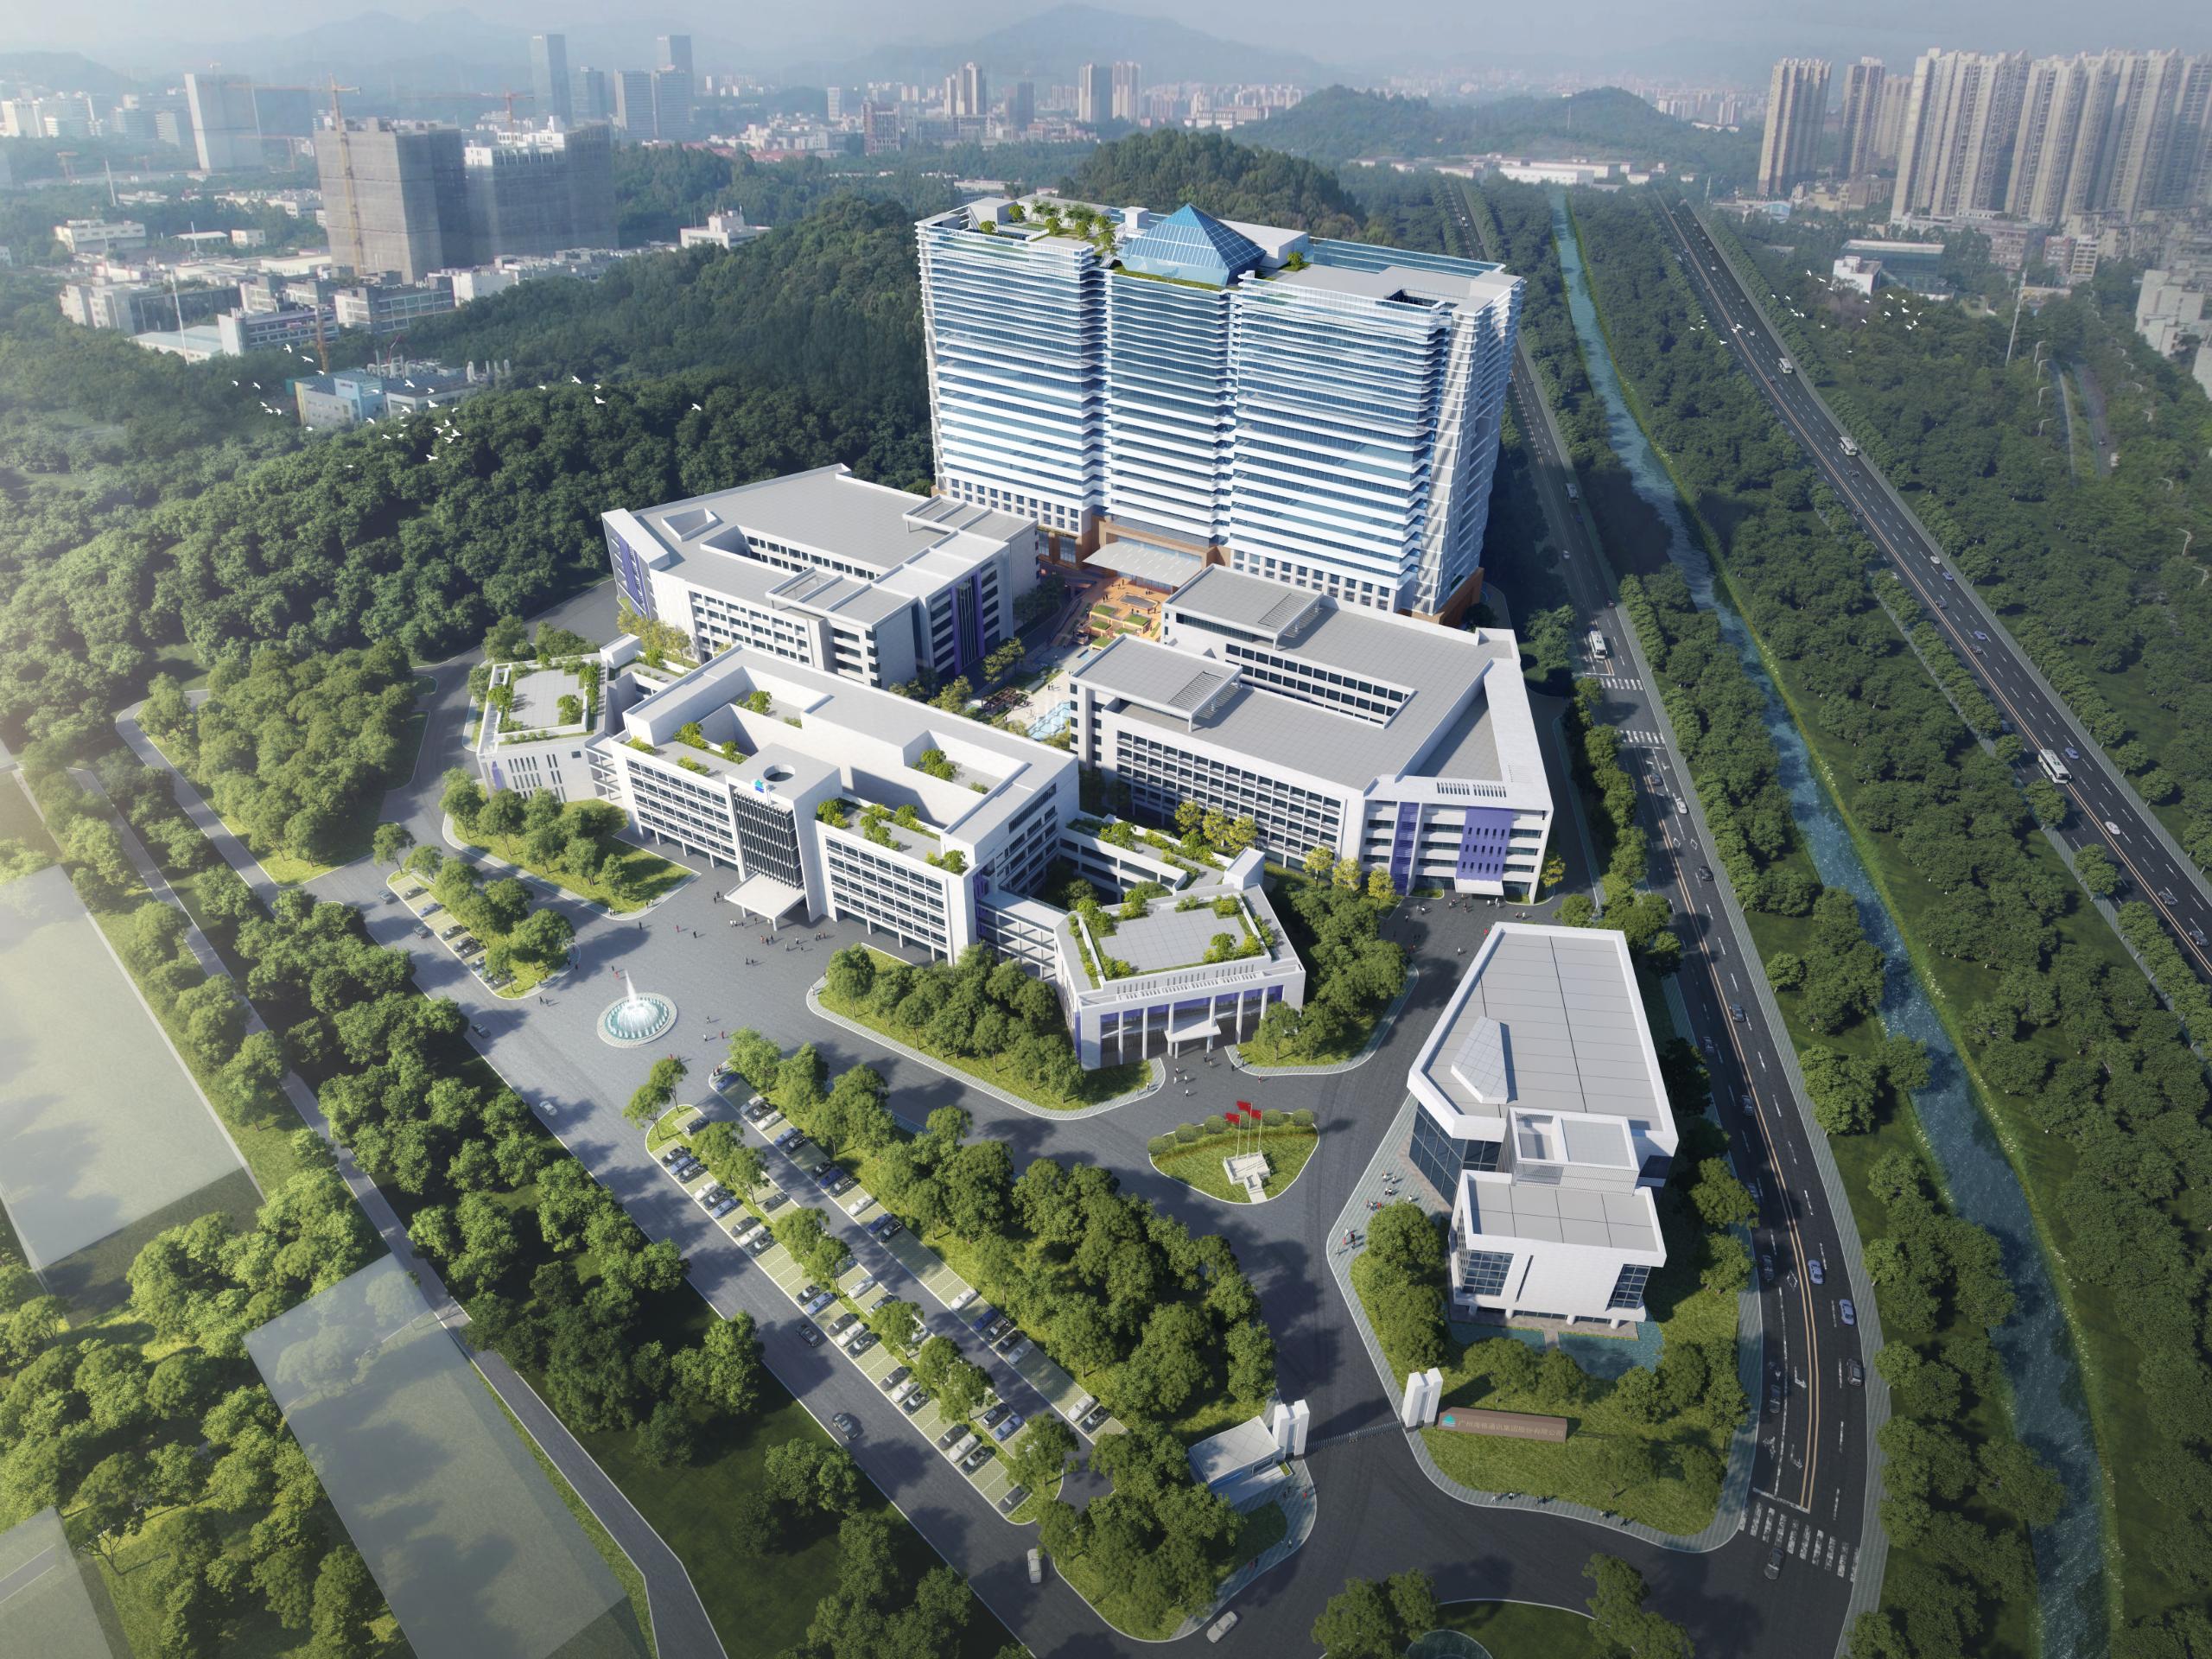 天津市推进节能环保和新能源工业开展 5年内建百家绿色演示工厂